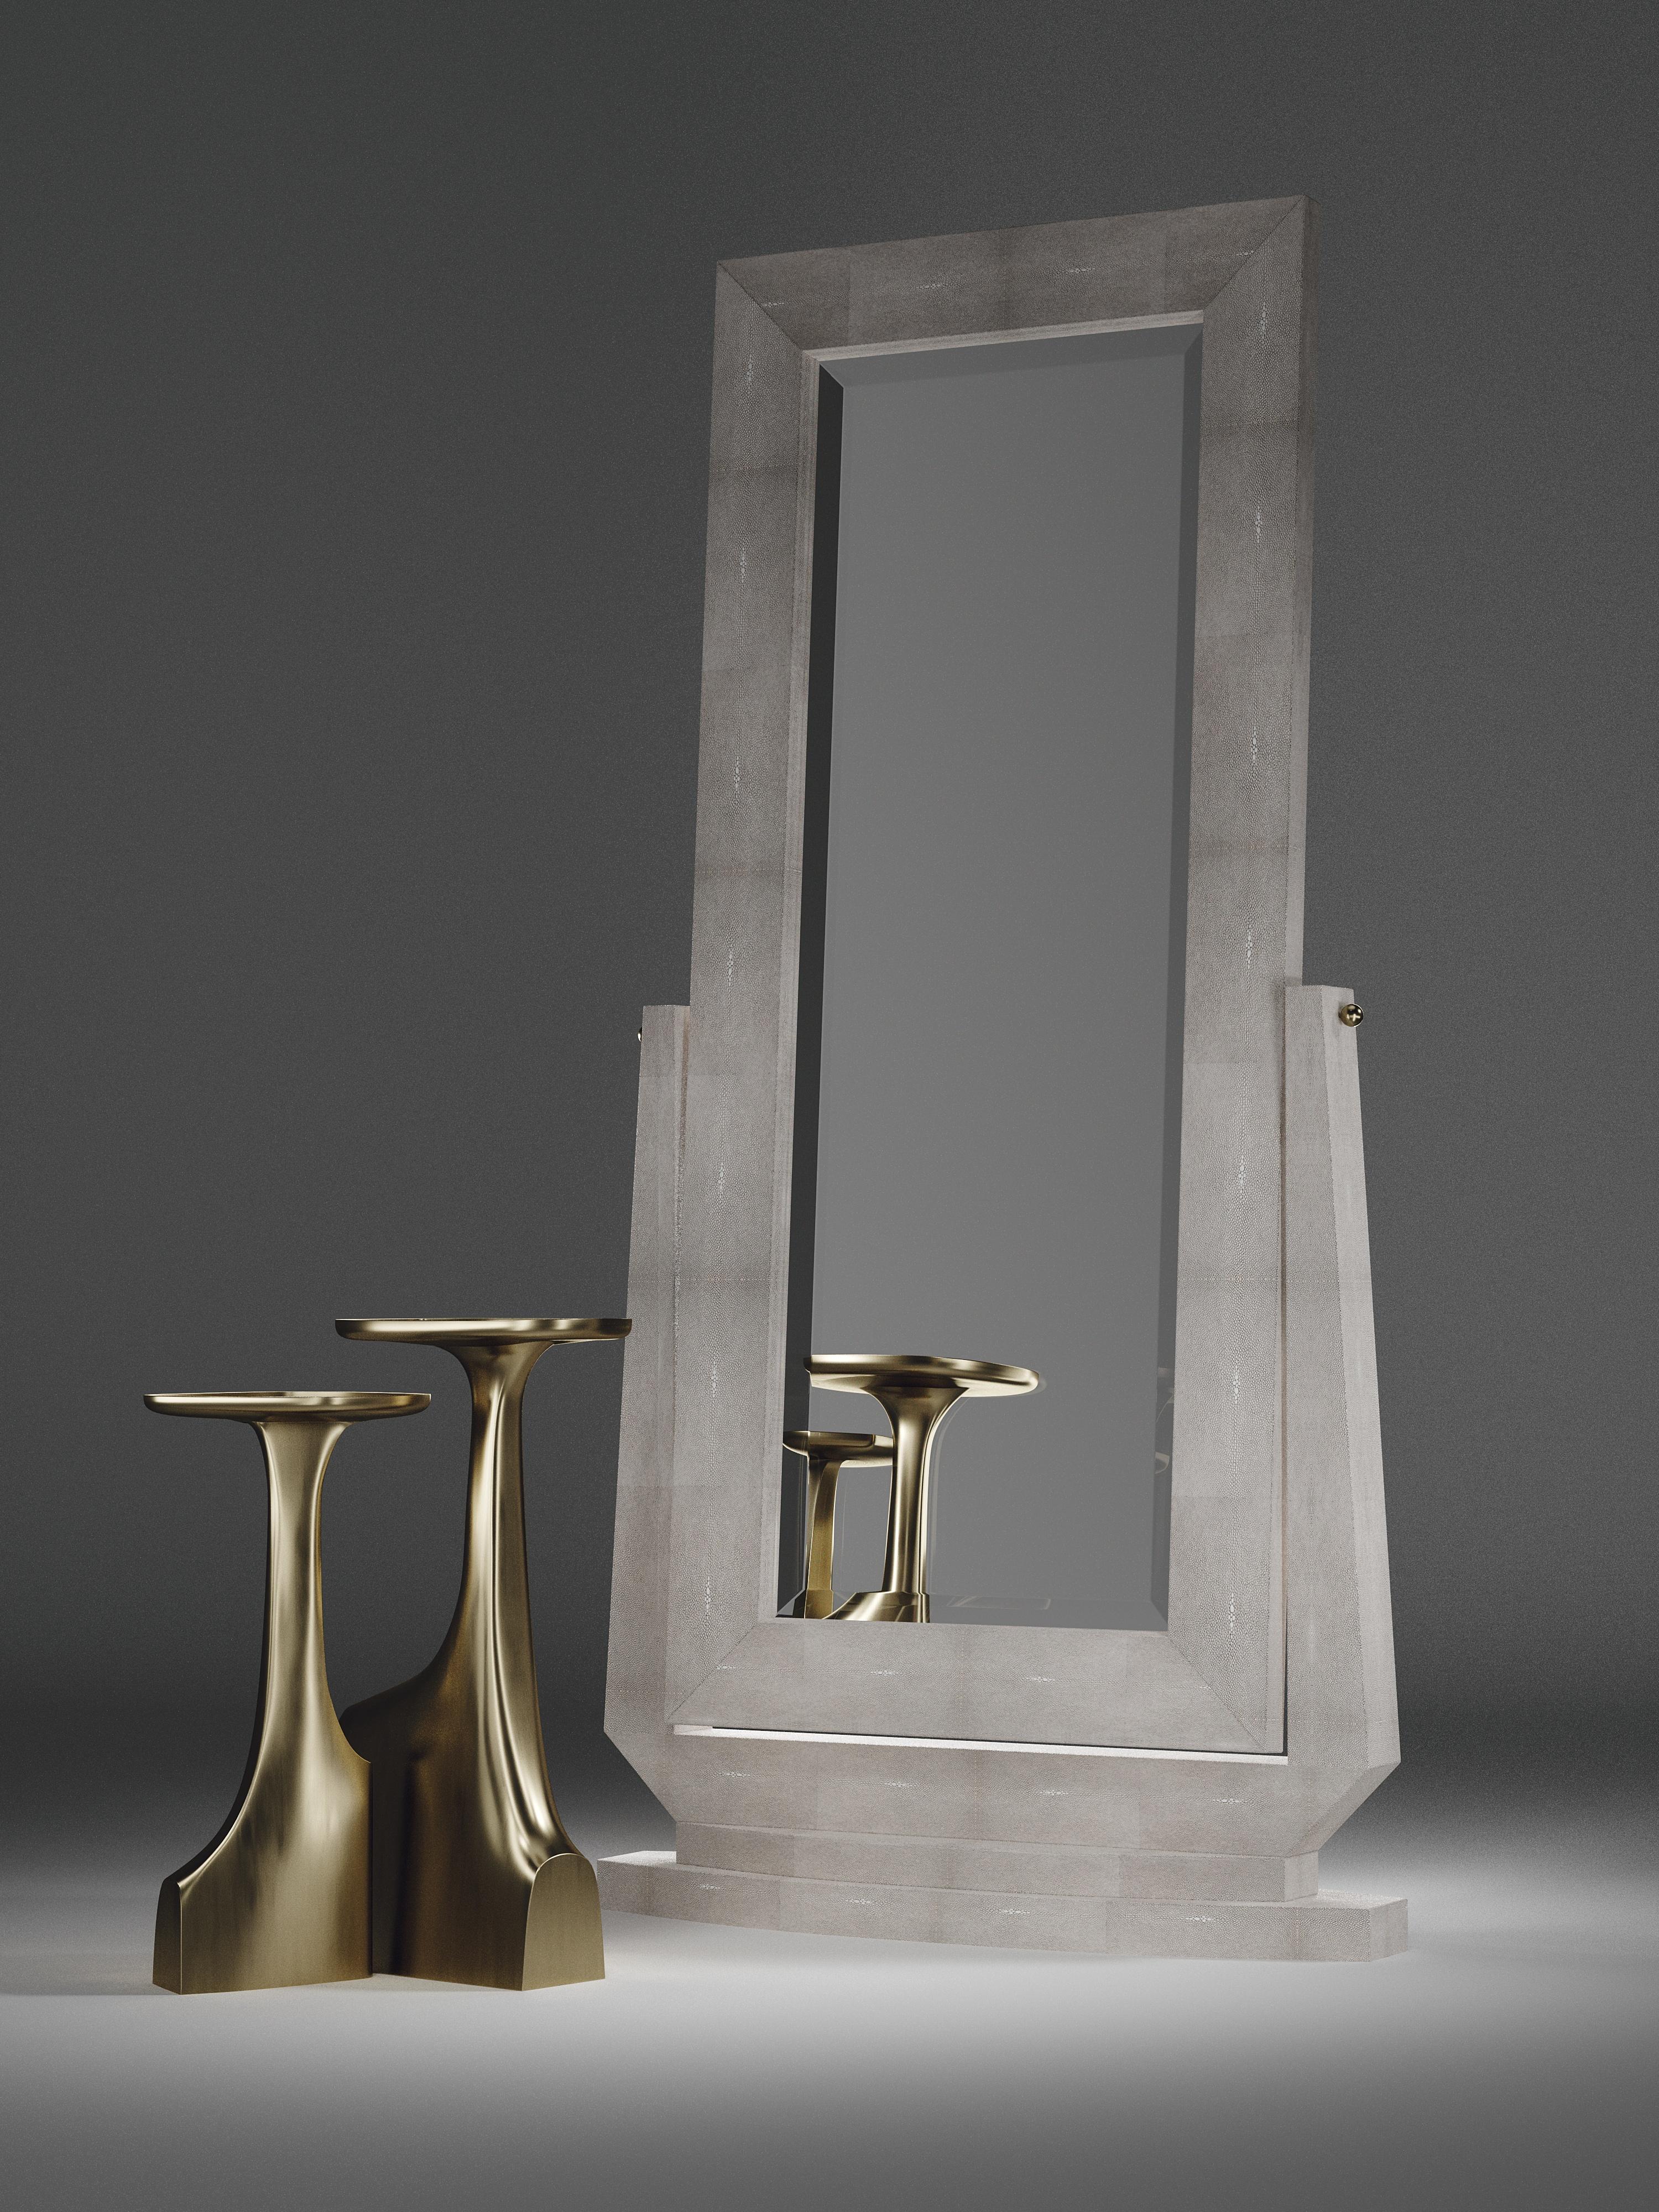 Der Bodenspiegel Shagreen von R&Y Augousti in cremefarbenem Shagreen ist ein wunderschönes, facettenreiches Stück. Abgesehen von seiner praktischen Größe verfügt der Spiegel über zwei Messingknöpfe aus Bronze-Patina, mit denen man den Winkel des